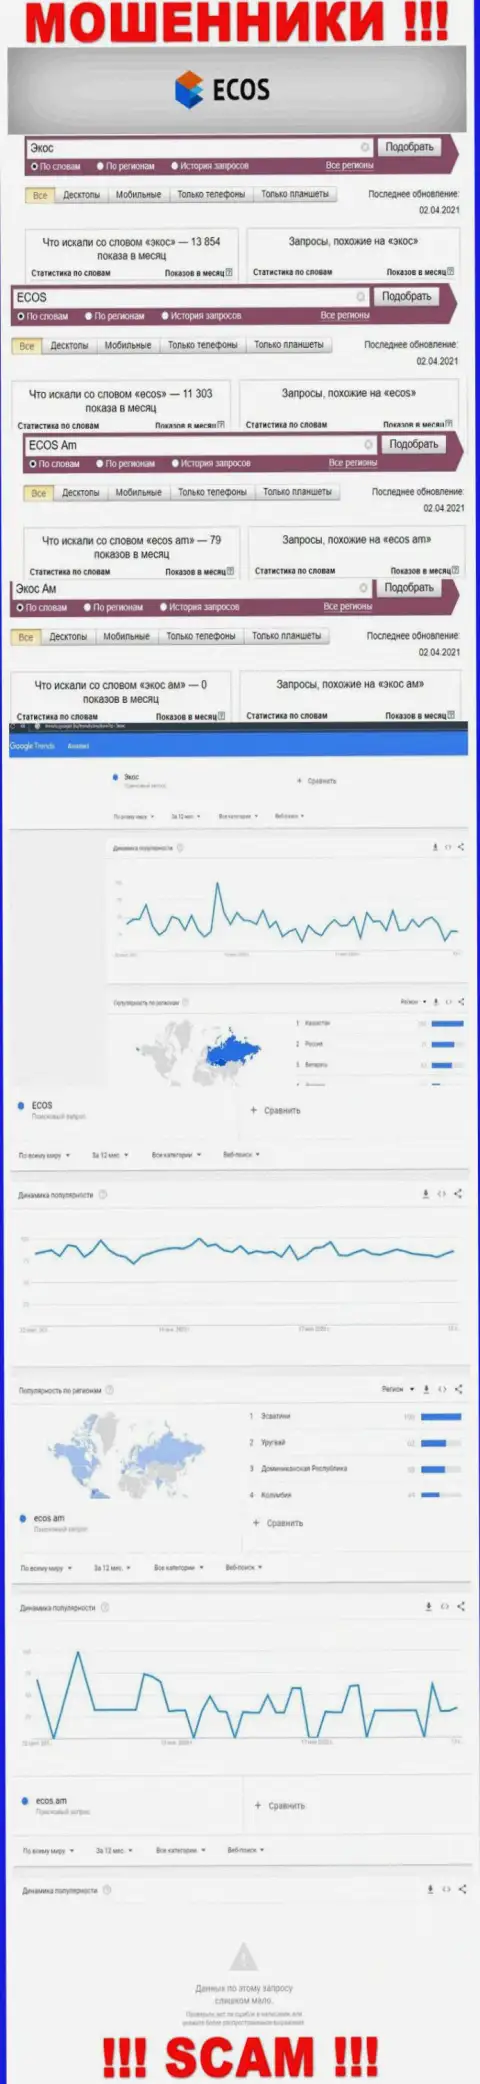 Статистические показатели о запросах в поисковиках всемирной интернет сети данных об организации ECOS